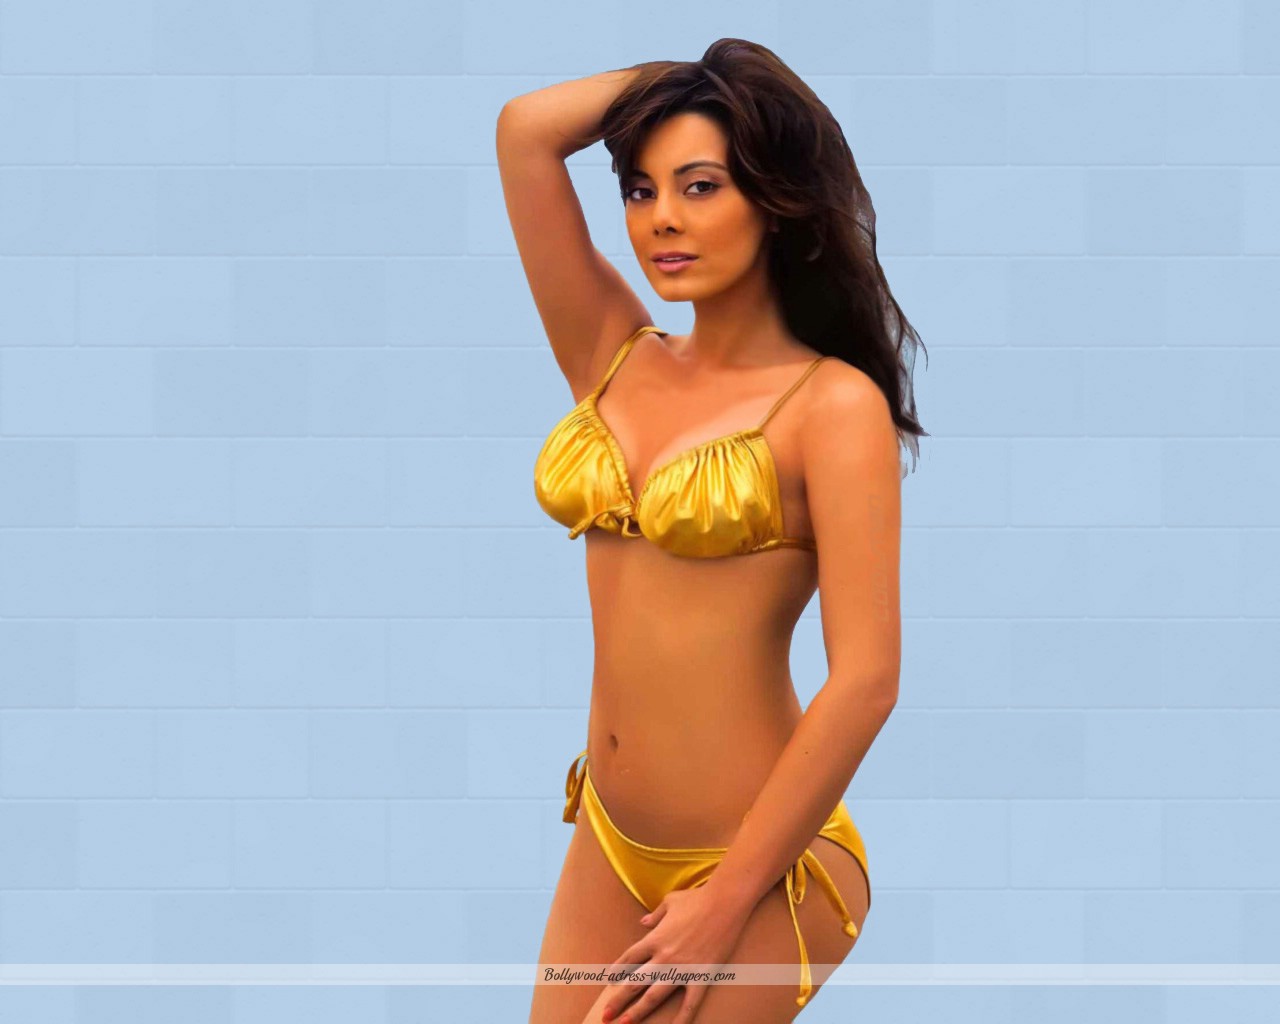 Bikini Photos Of Bollywood Actress 40